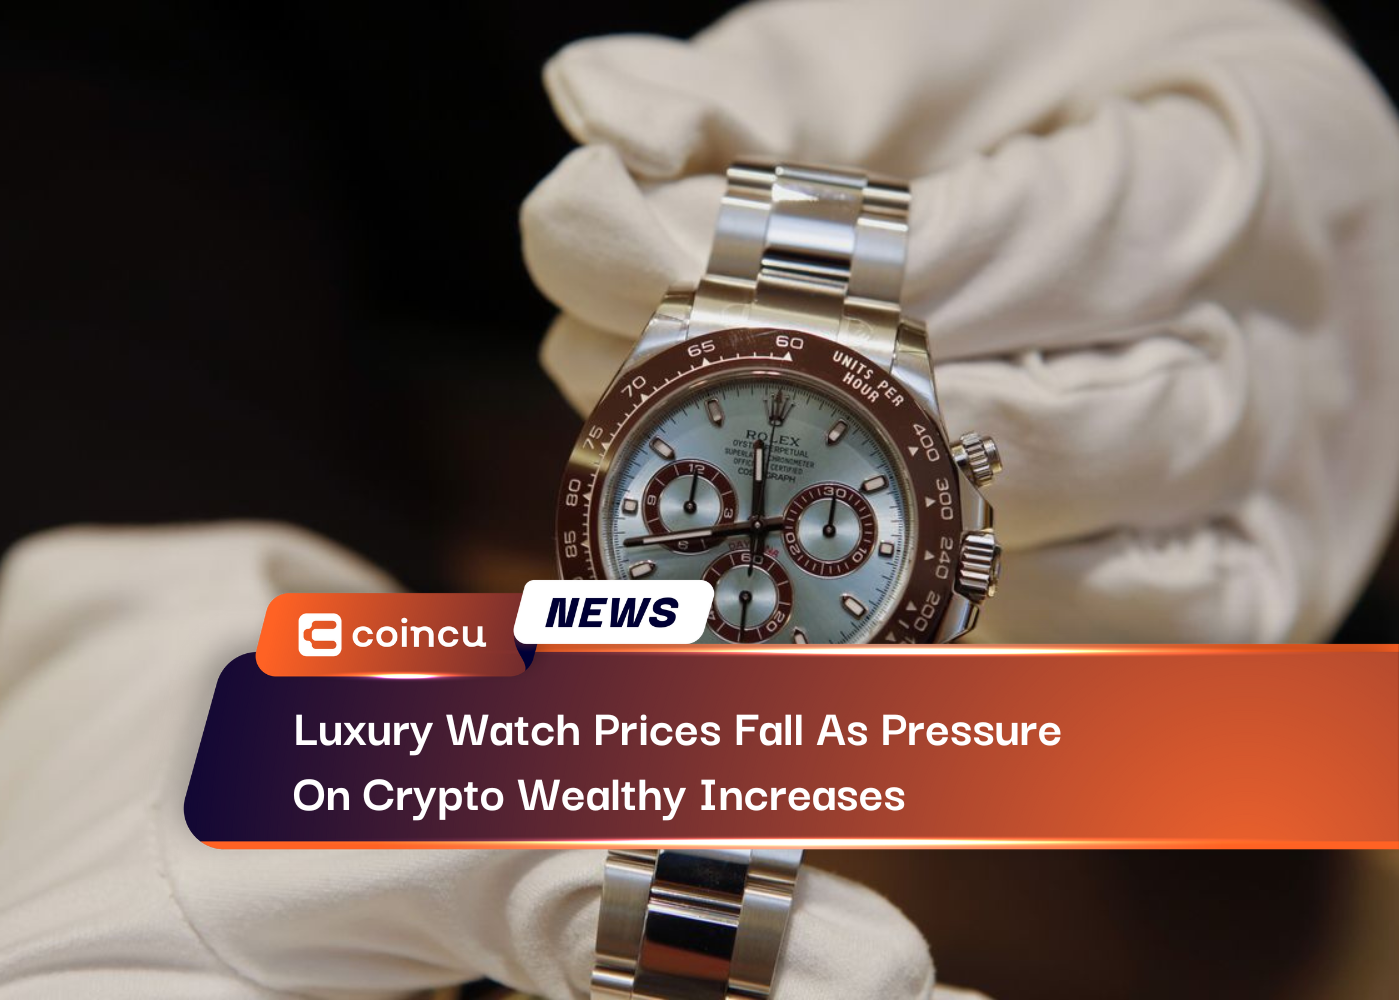 Los precios de los relojes de lujo caen a medida que aumenta la presión sobre los cripto ricos